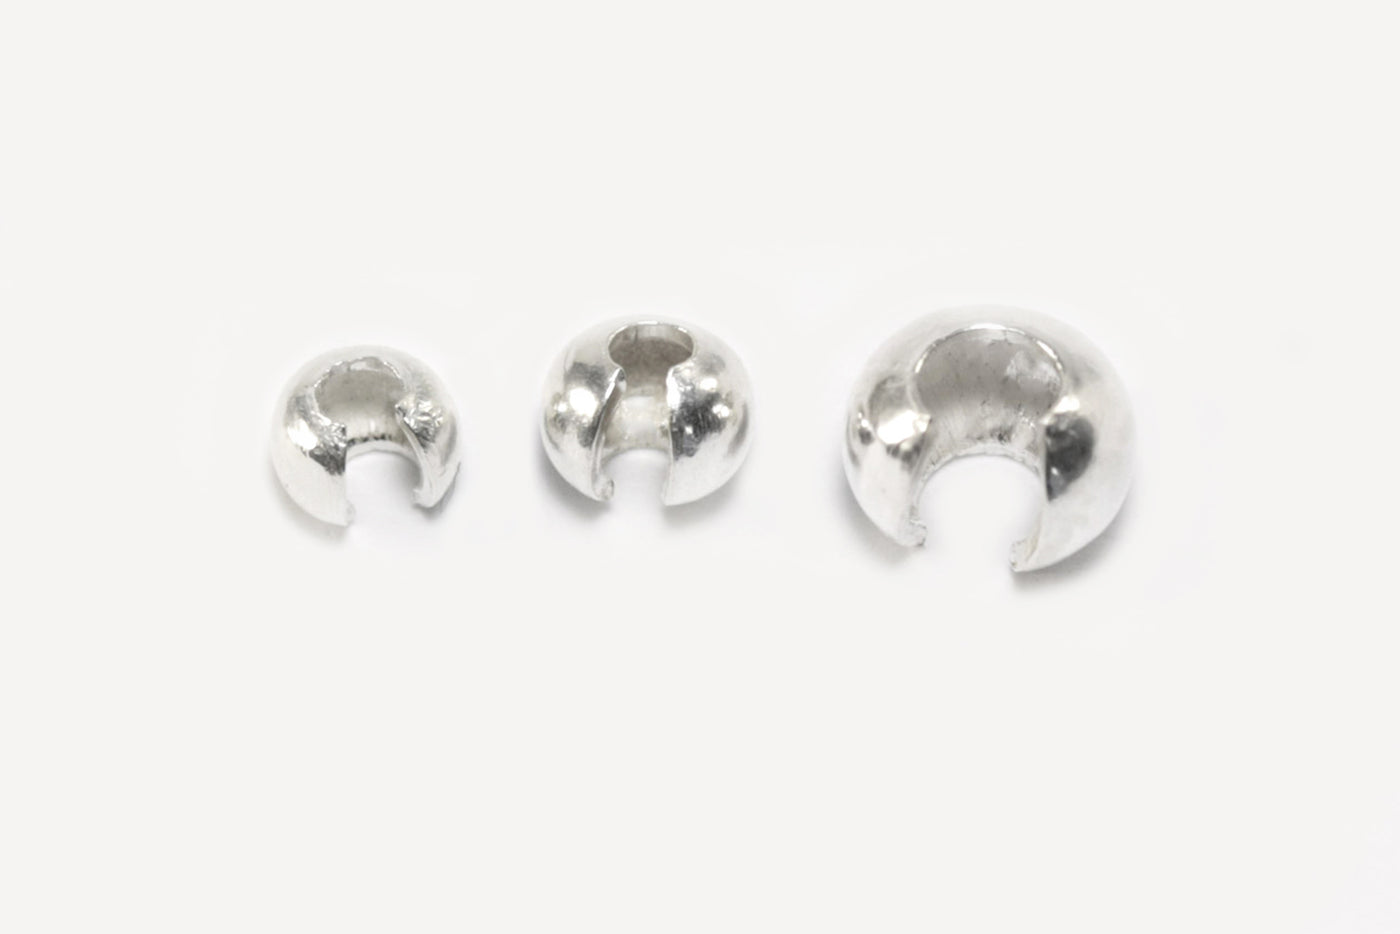 Kaschierperlen aus 925 Silber, Ø 3 mm